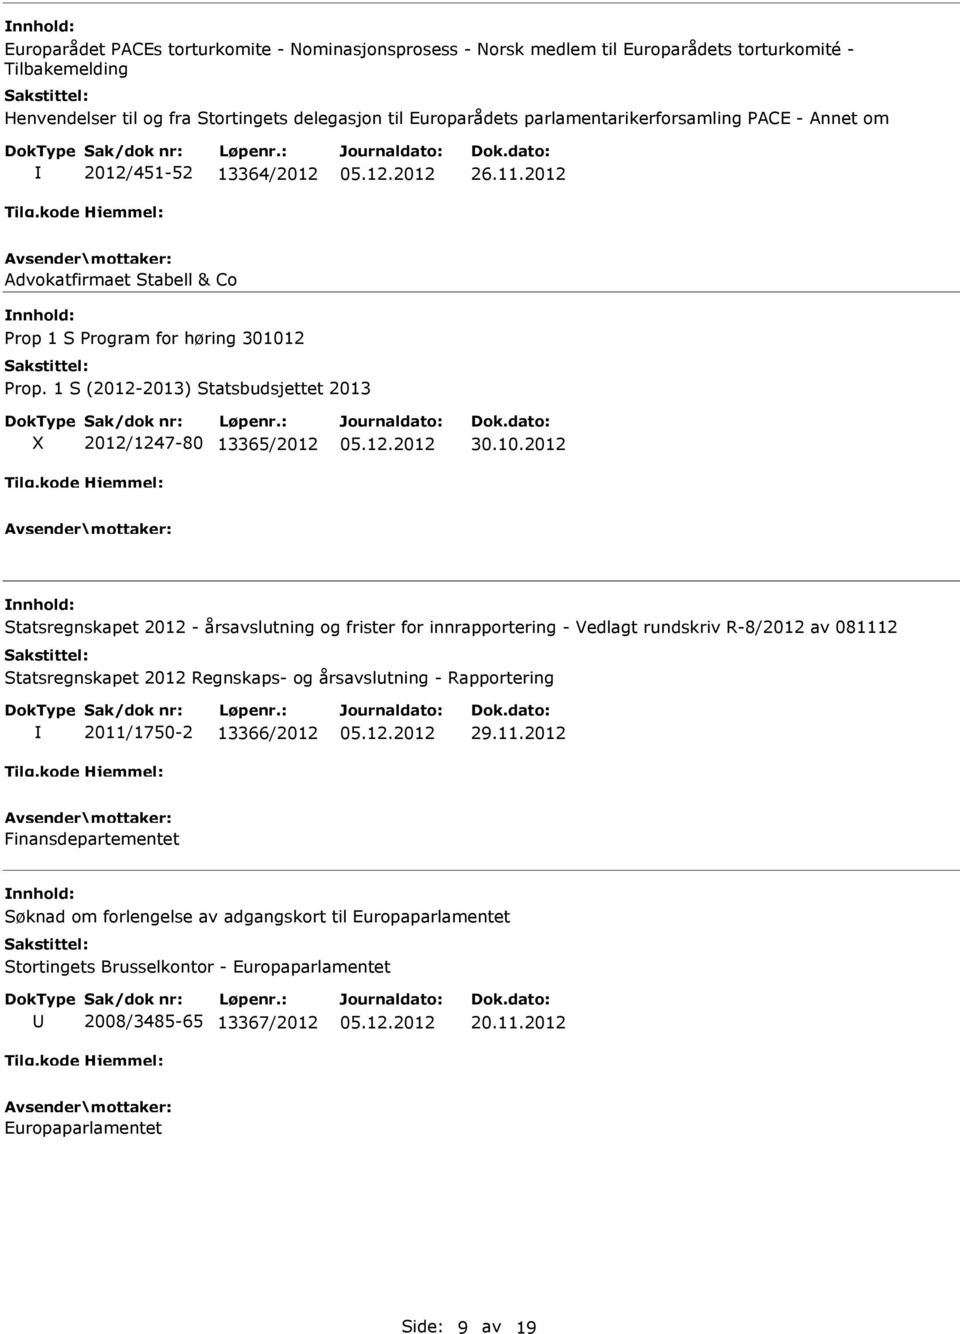 1 S (2012-2013) Statsbudsjettet 2013 2012/1247-80 13365/2012 30.10.